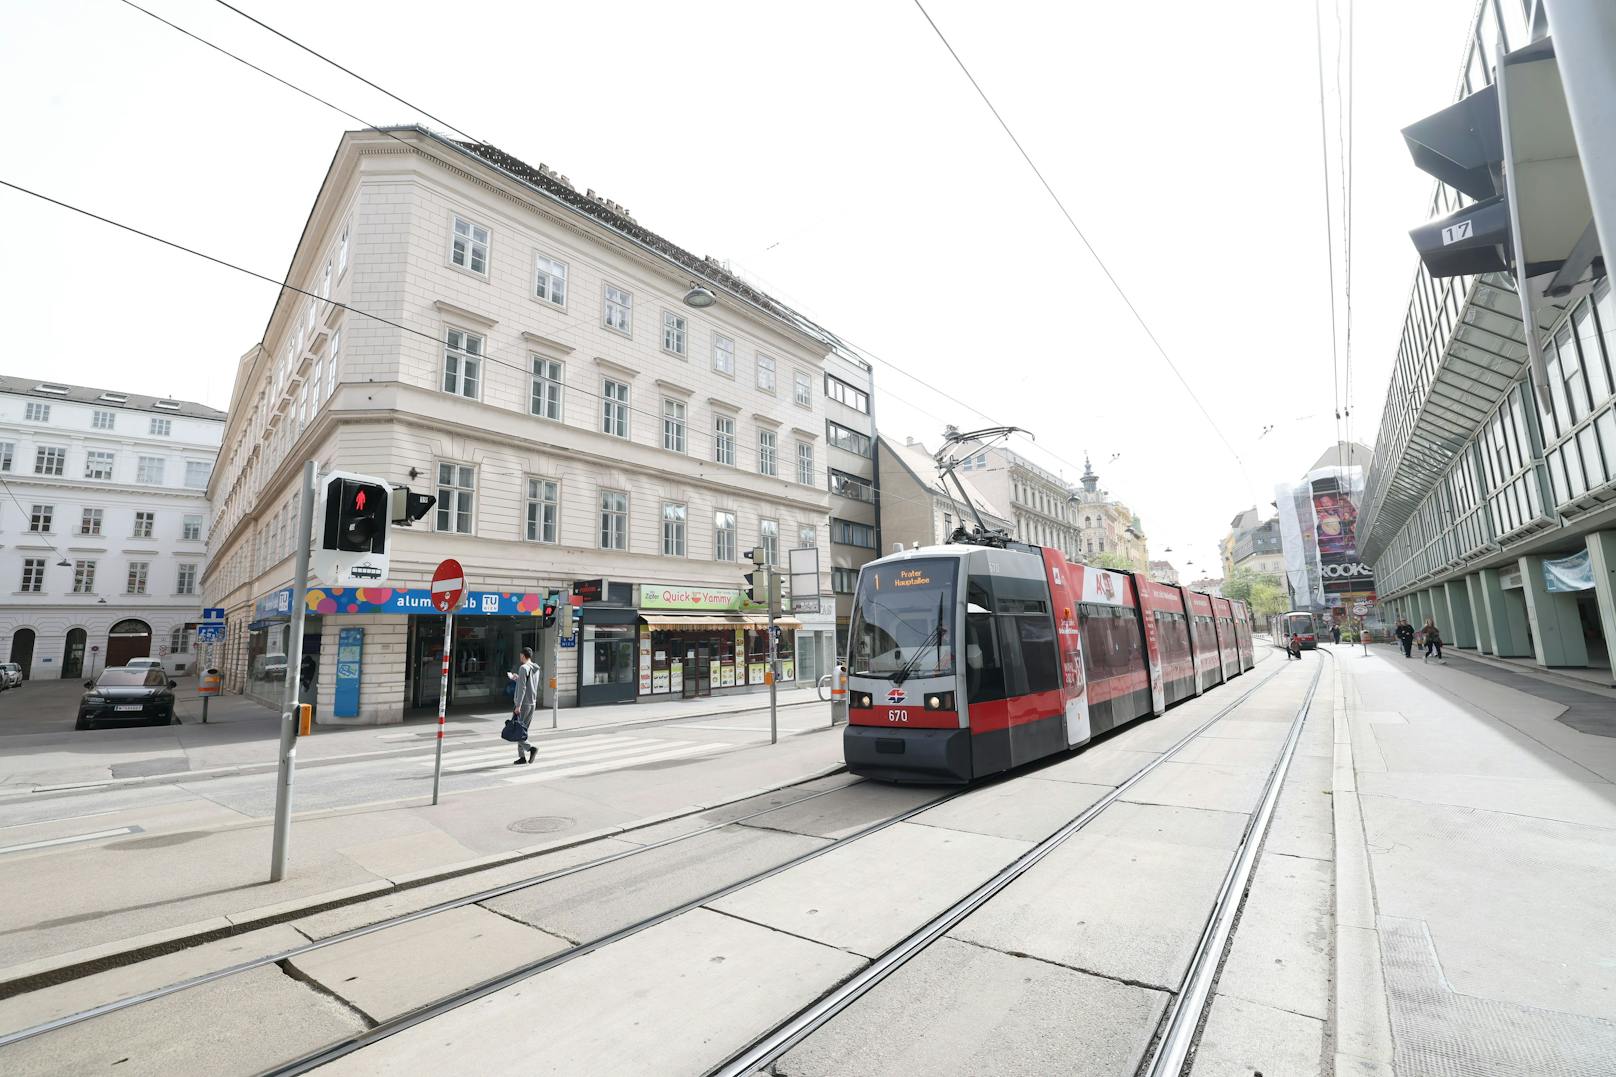 Am 2. April startet die erste Phase der Umbauarbeiten in der Wiedner Hauptstraße.